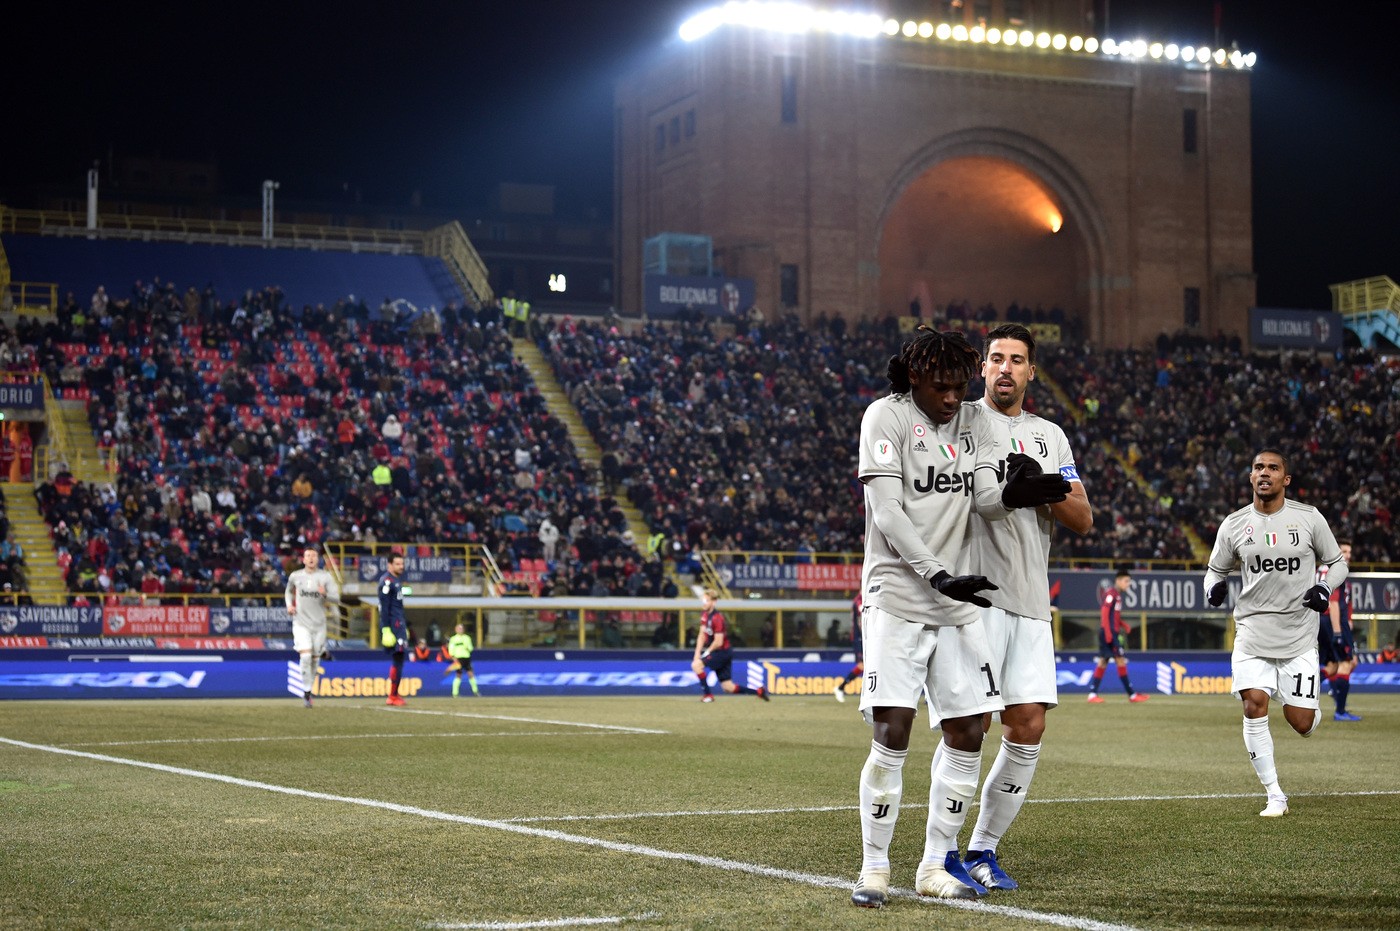 Afbeeldingsresultaat voor Bologna Juventus 0-2 coppa italia